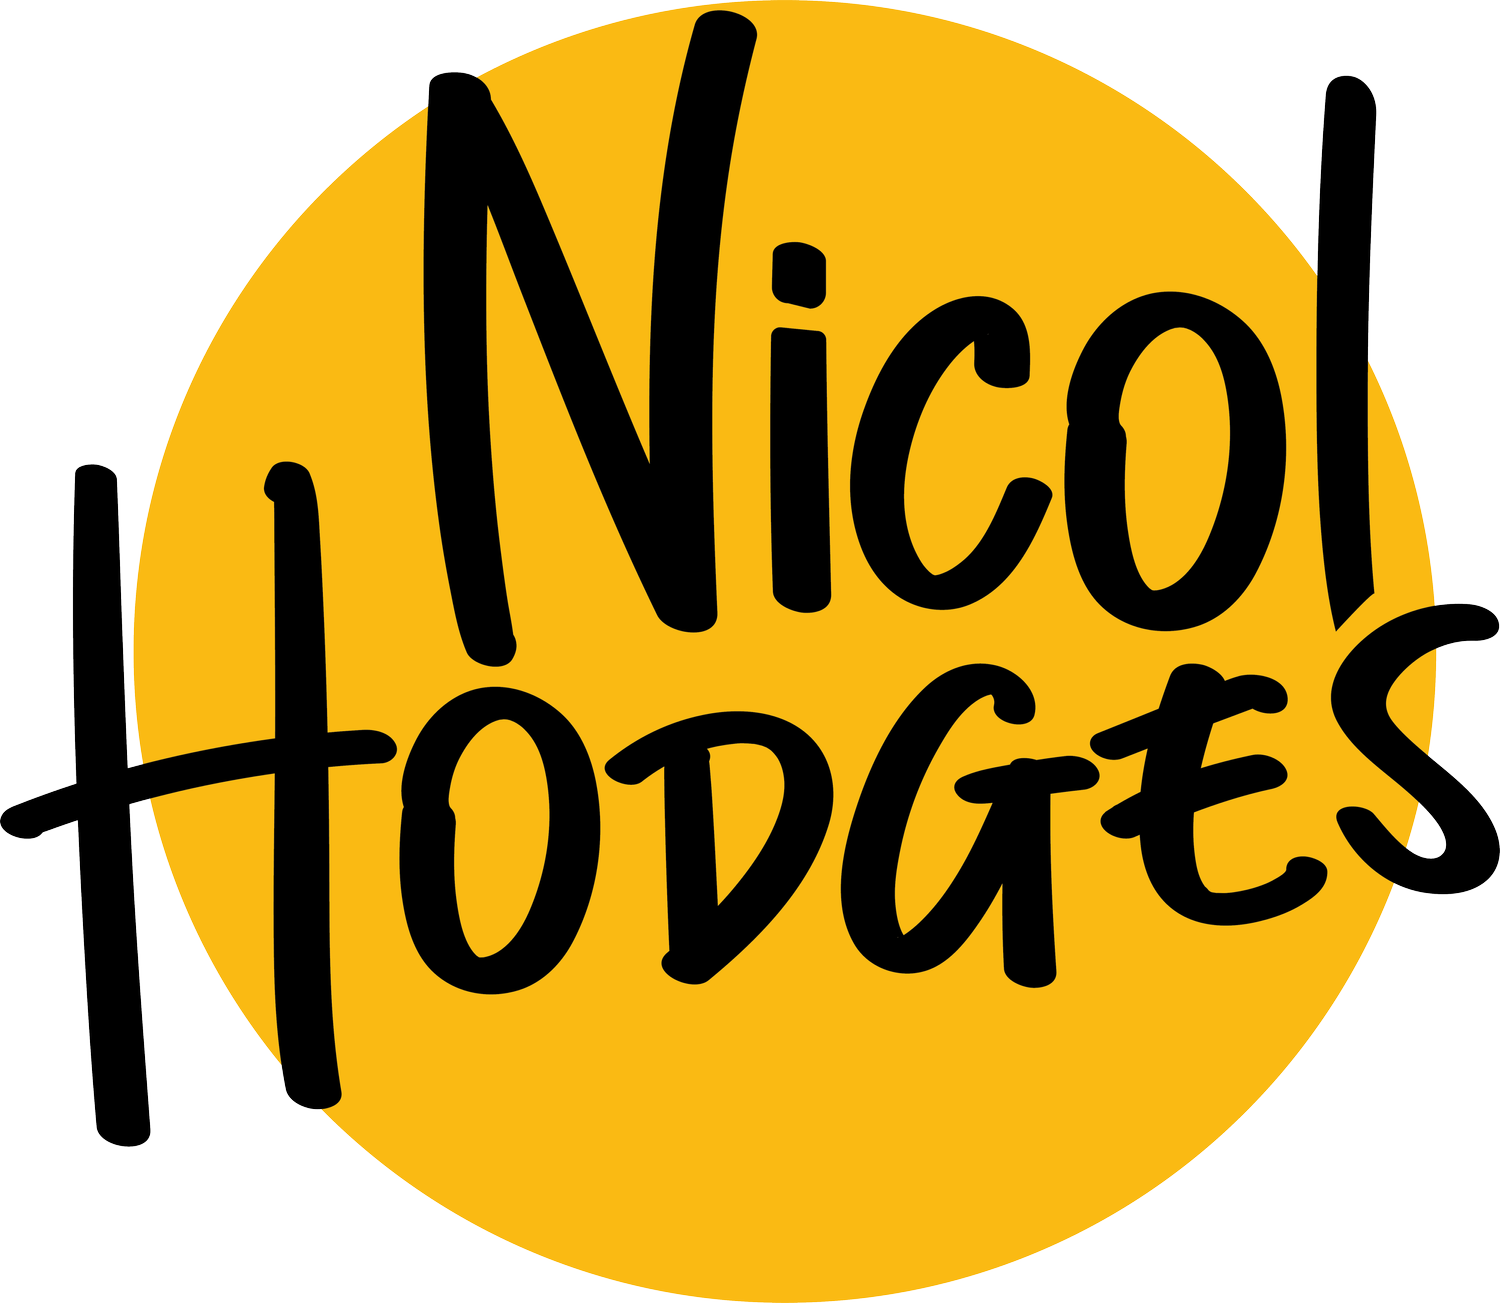 NICOL HODGES